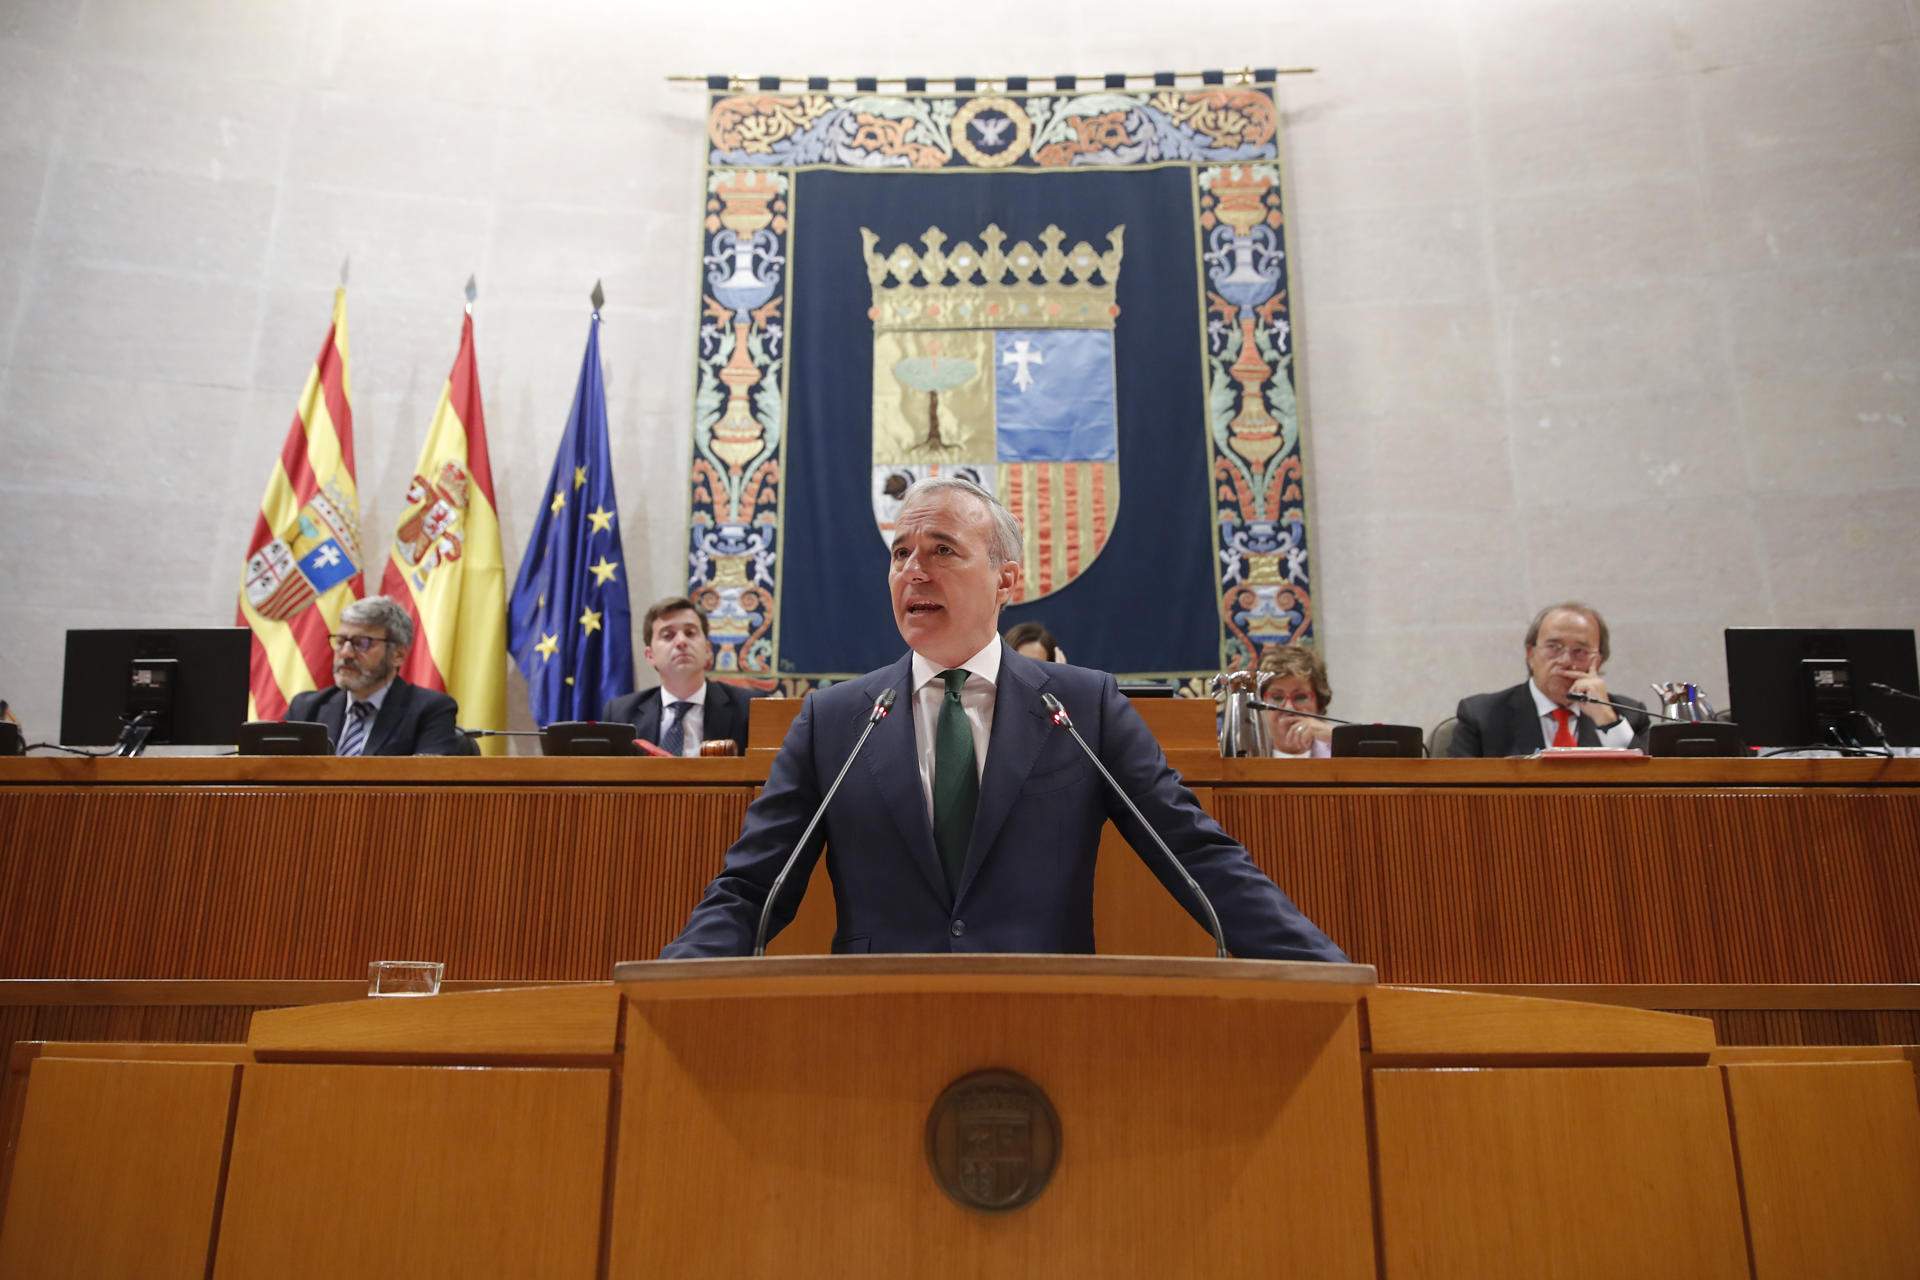 Les Corts de l'Aragó, un altre parlament que vota portar l'amnistia al Tribunal Constitucional